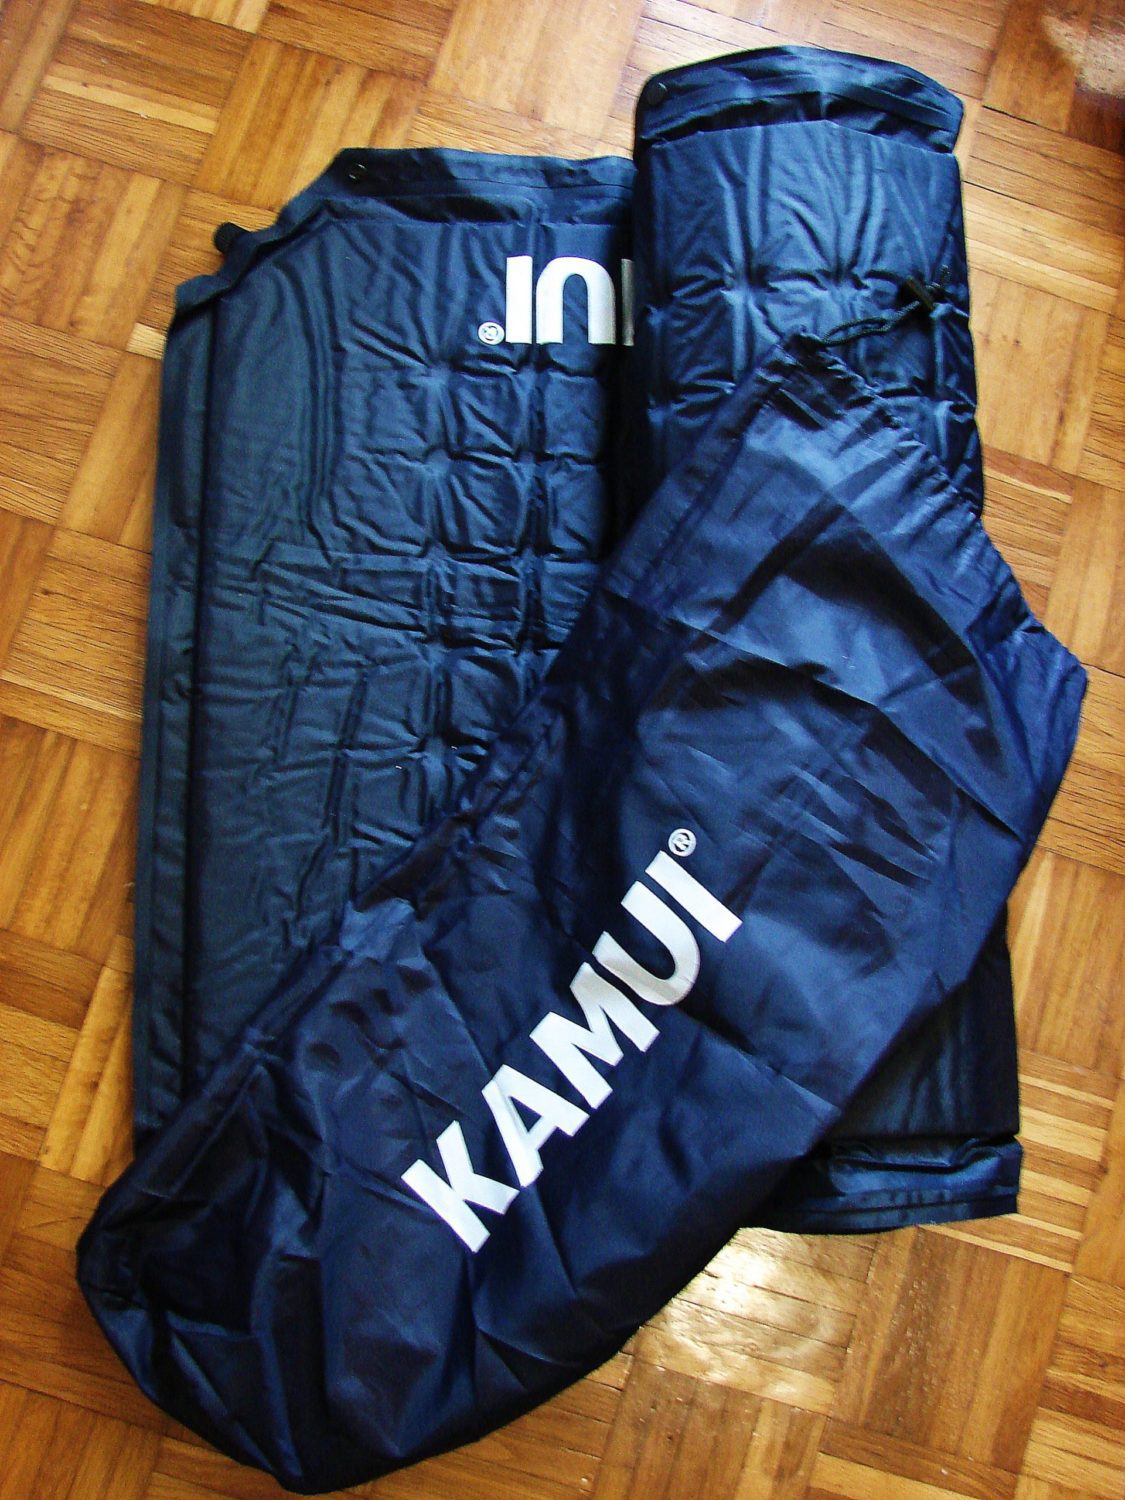 KAMUI with bag